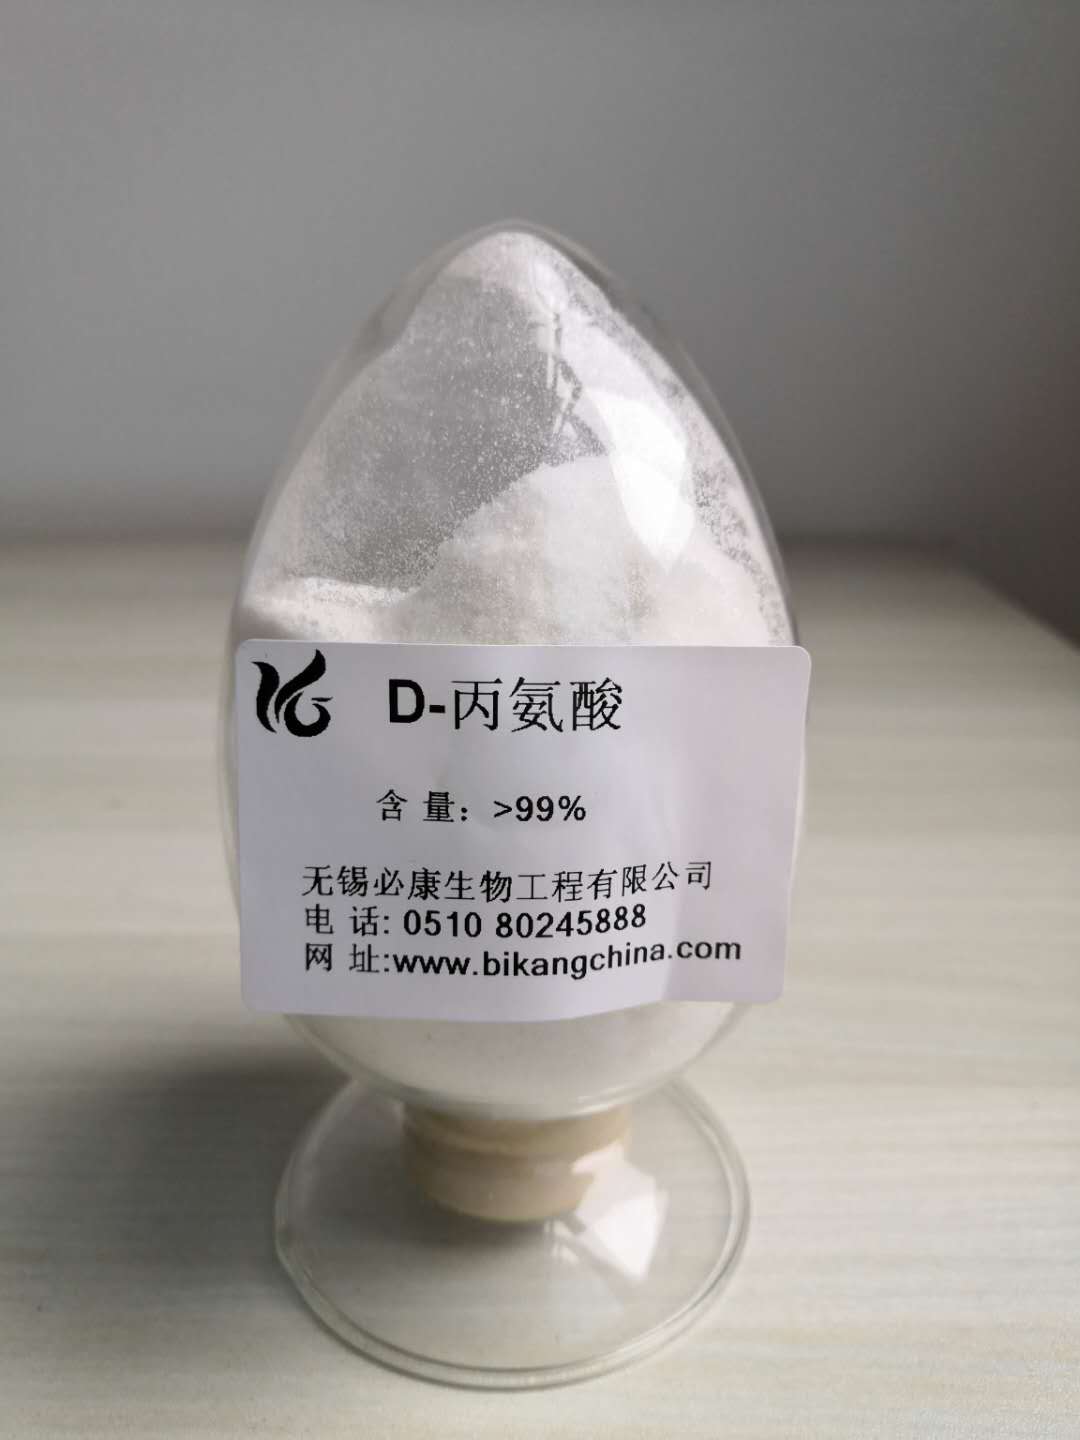 D-丙氨酸 产品图片